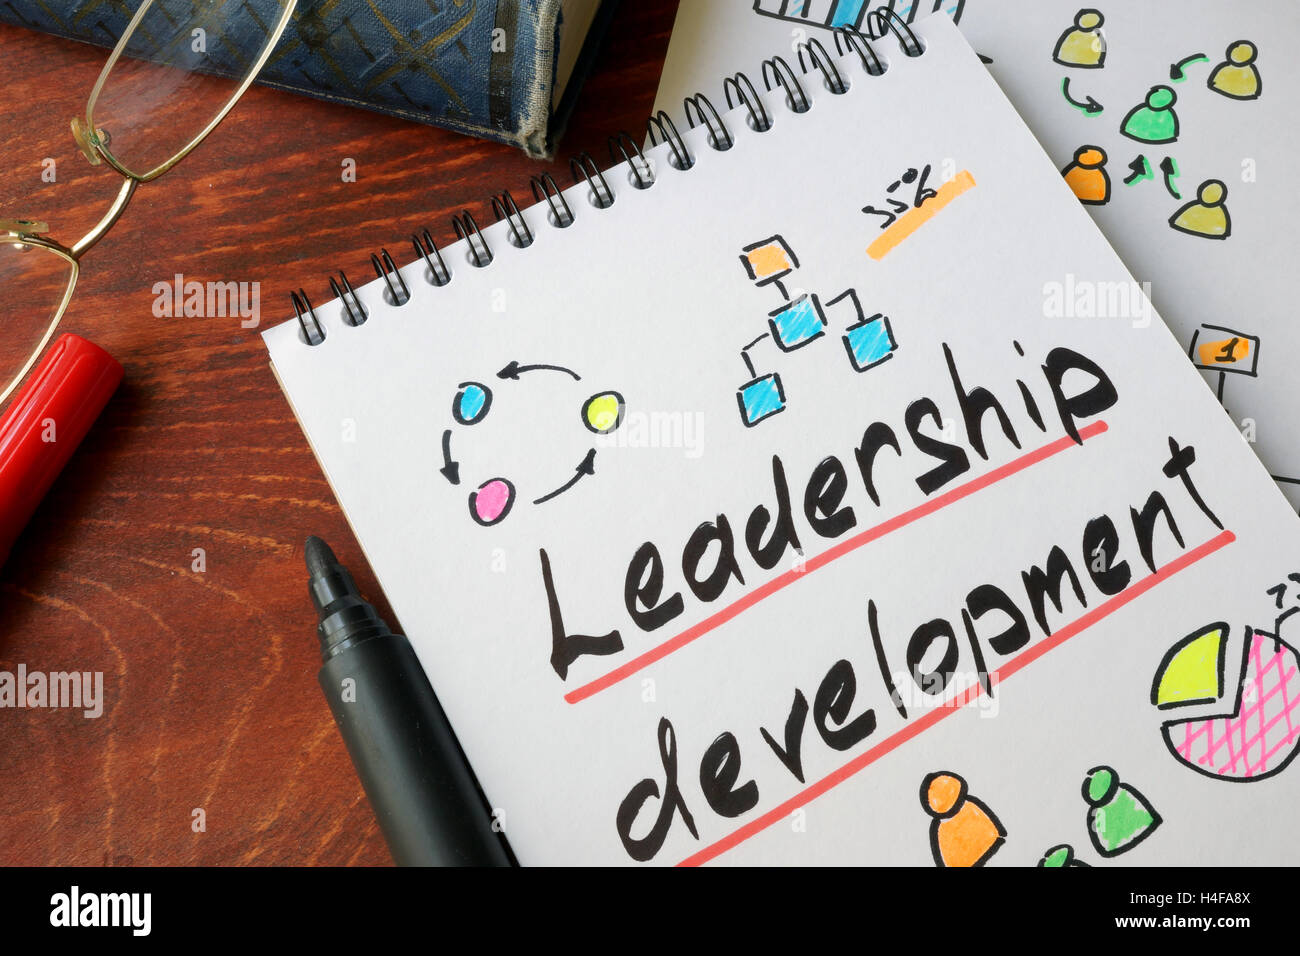 Führungskräfte-Entwicklung auf ein Papier geschrieben. Selbstverbesserung Konzept Stockfoto